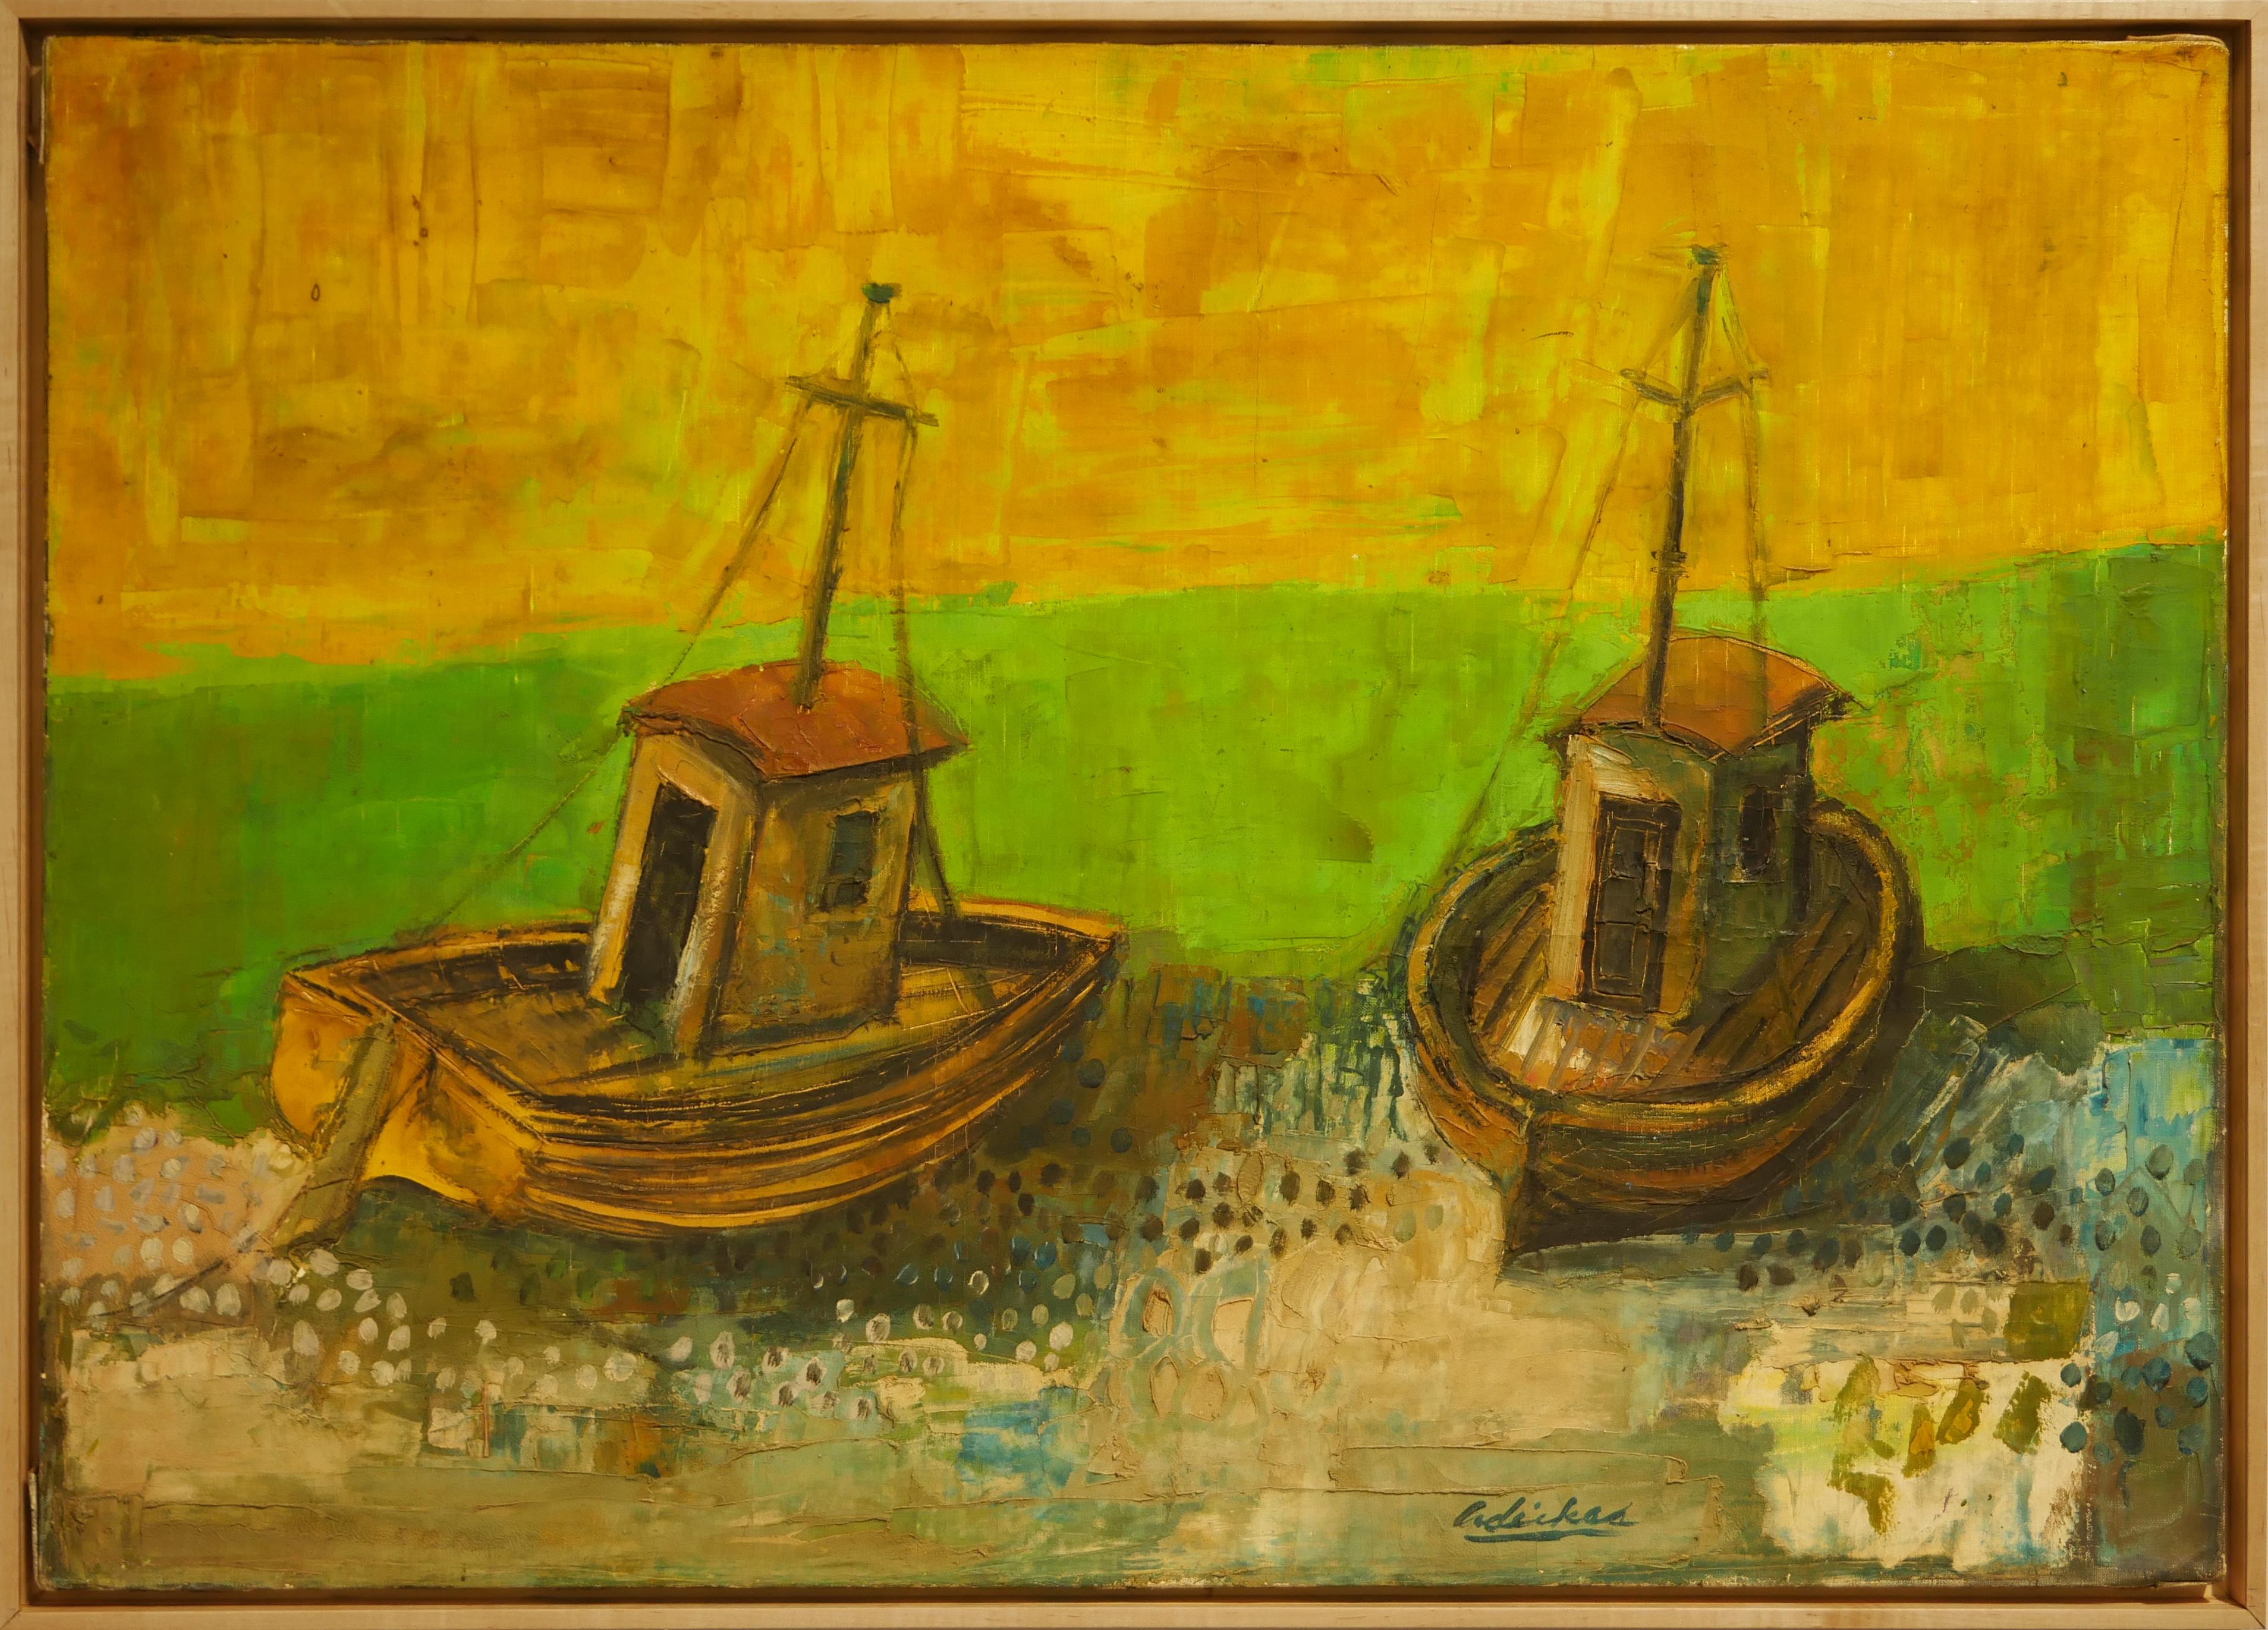 David Adickes Landscape Painting – „Zwei Boote auf grünem Meer“ Modernes geometrisches abstraktes Landschaftsgemälde